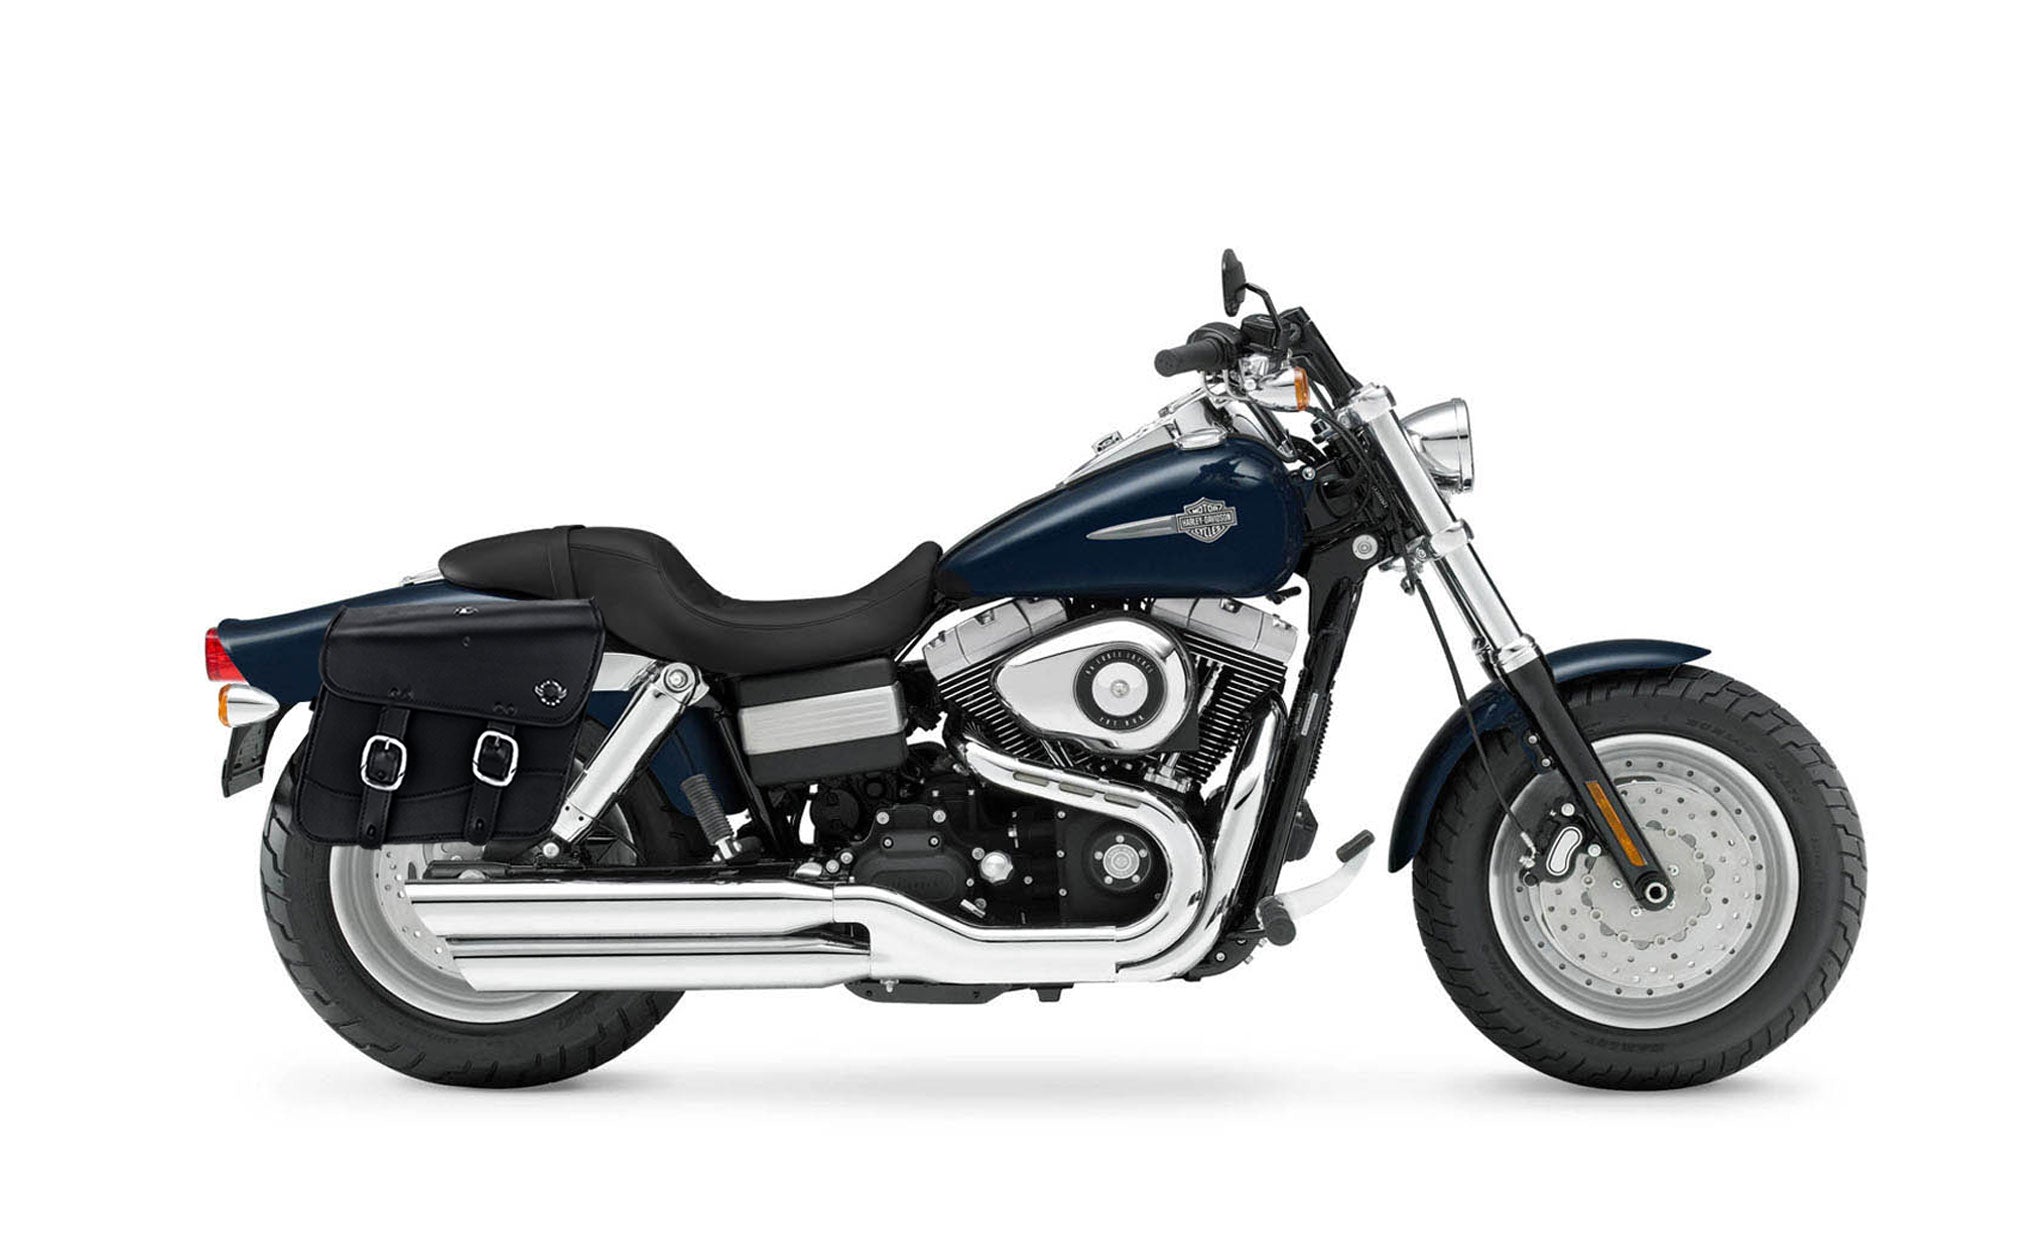 Viking Thor Medium Leather Motorcycle Saddlebags For Harley Davidson Dyna Fat Bob Fxdf Se on Bike Photo @expand